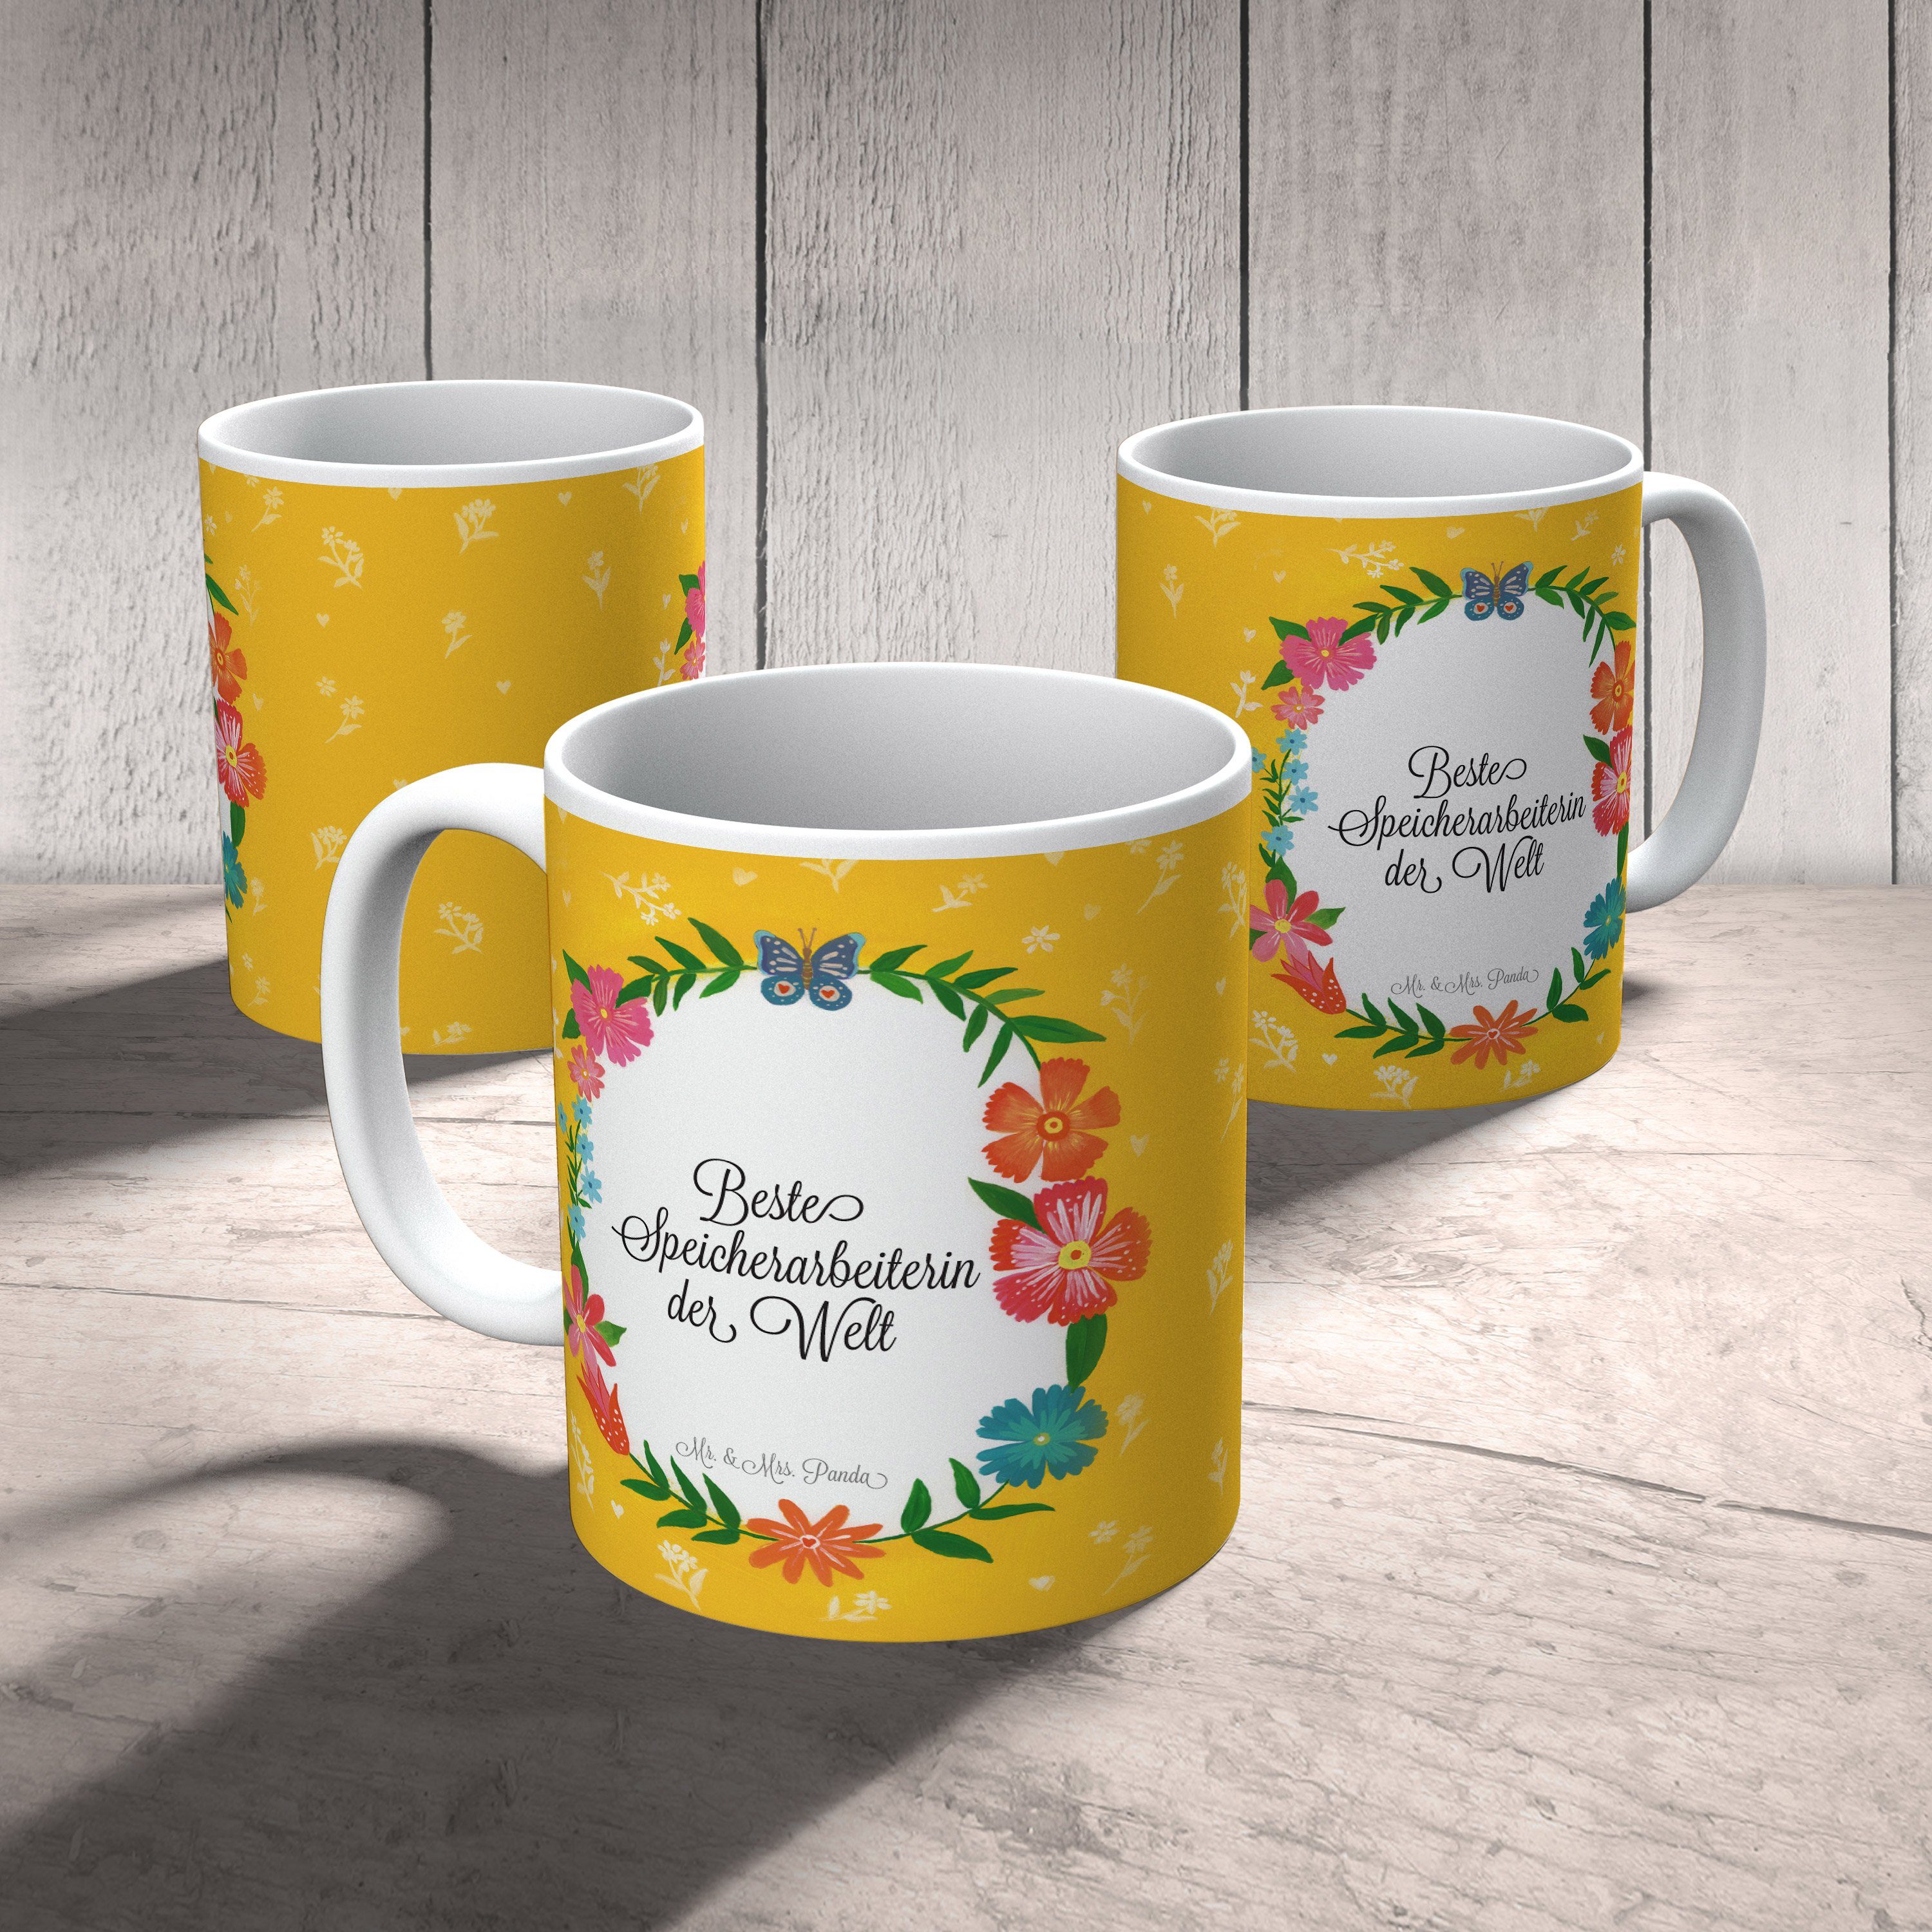 Mr. & Mrs. Panda Tasse Keramik Berufsausbildung, Abschlu, - Kaffeetasse, Speicherarbeiterin Geschenk